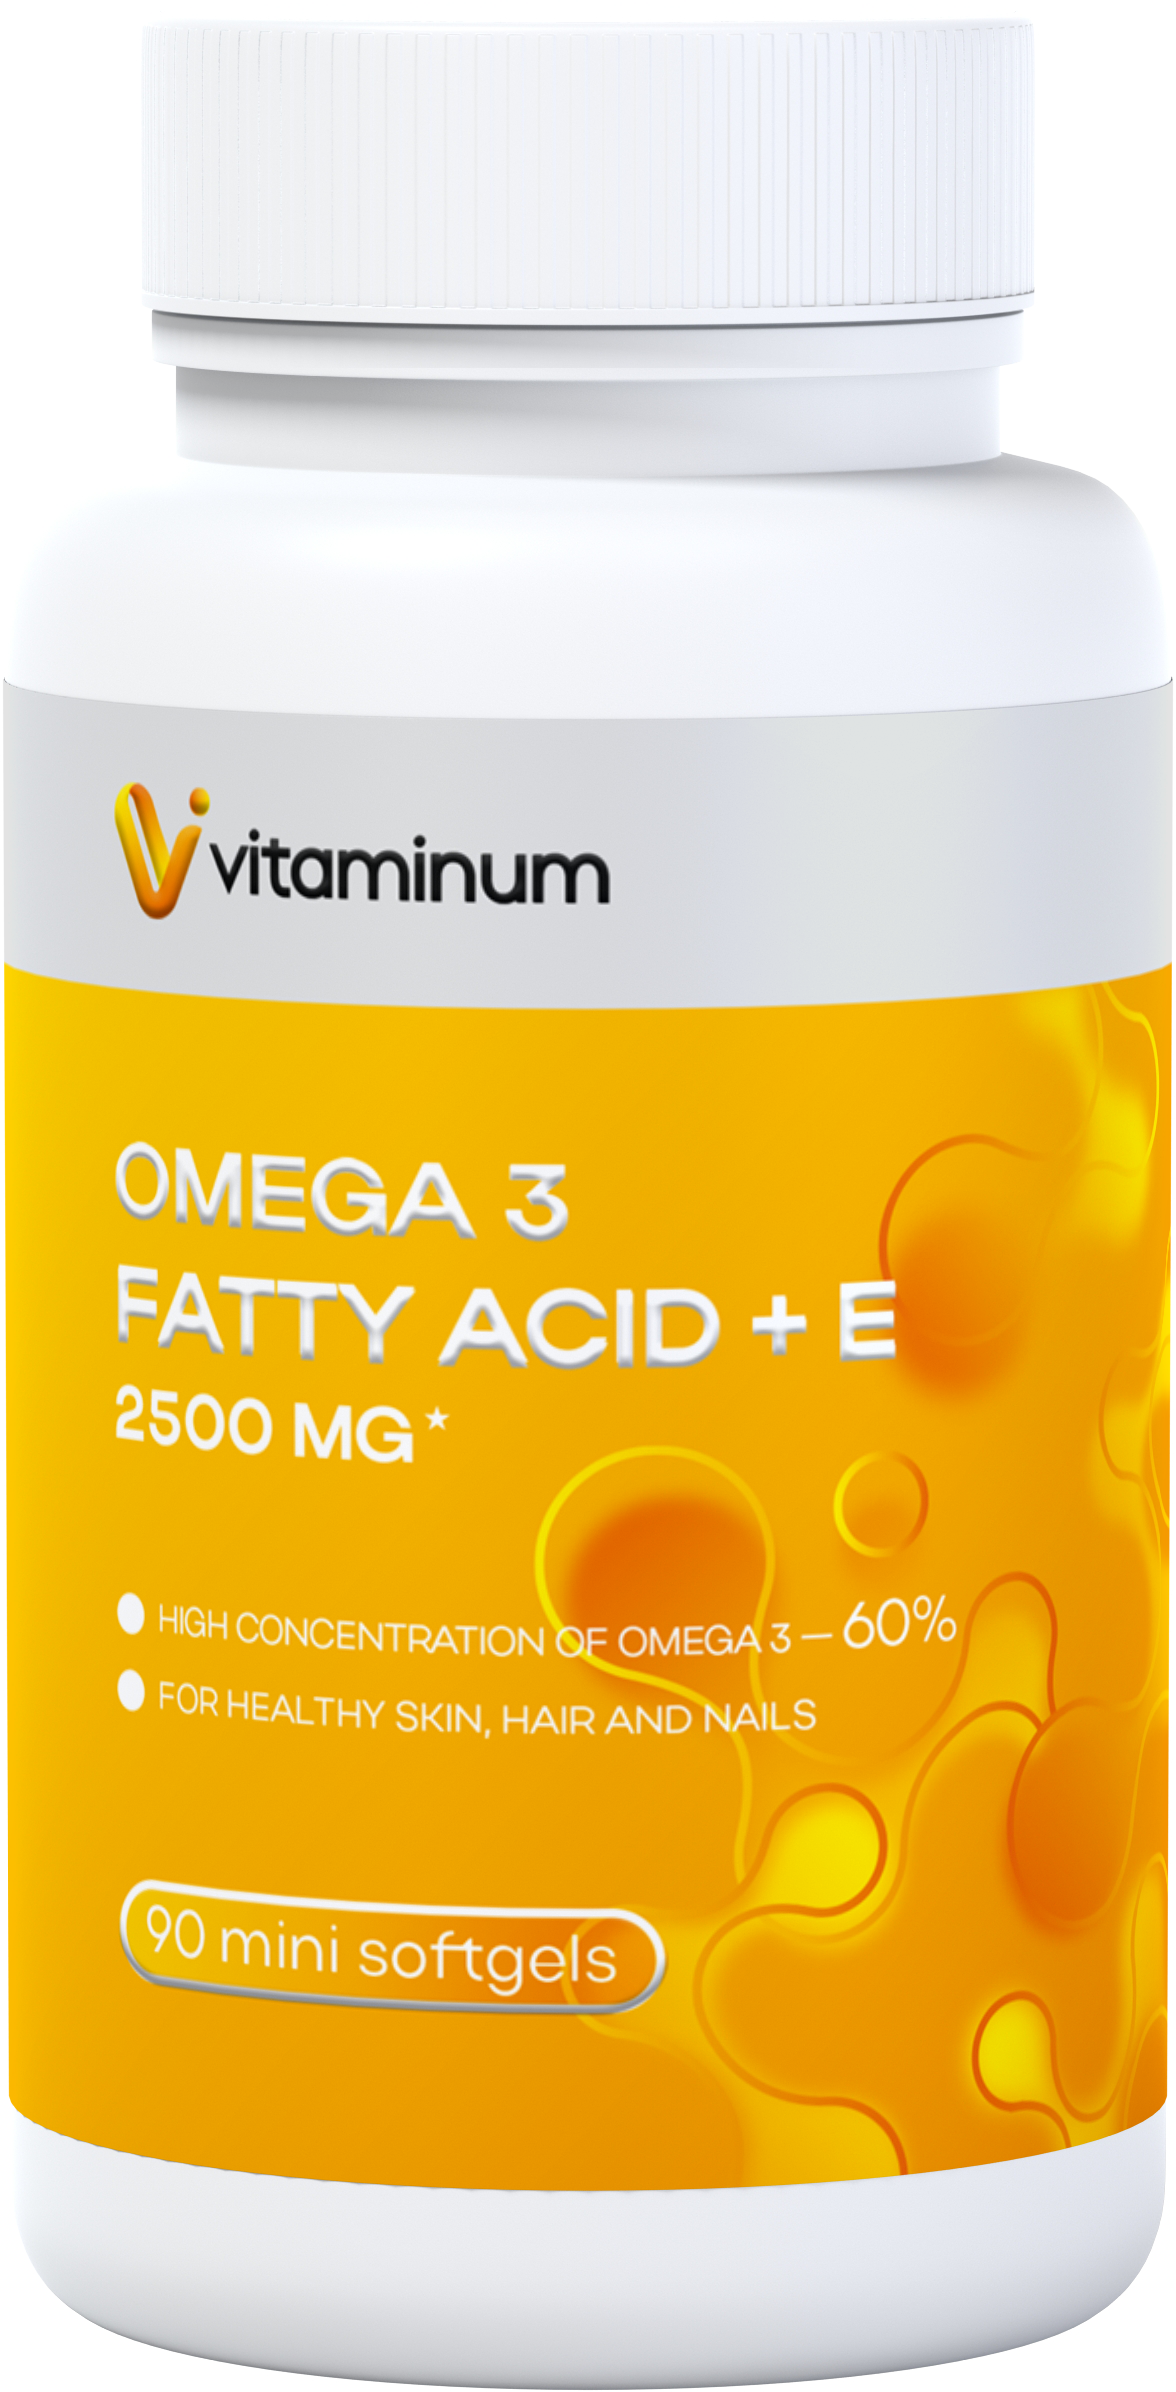  Vitaminum ОМЕГА 3 60% + витамин Е (2500 MG*) 90 капсул 700 мг   в Омске